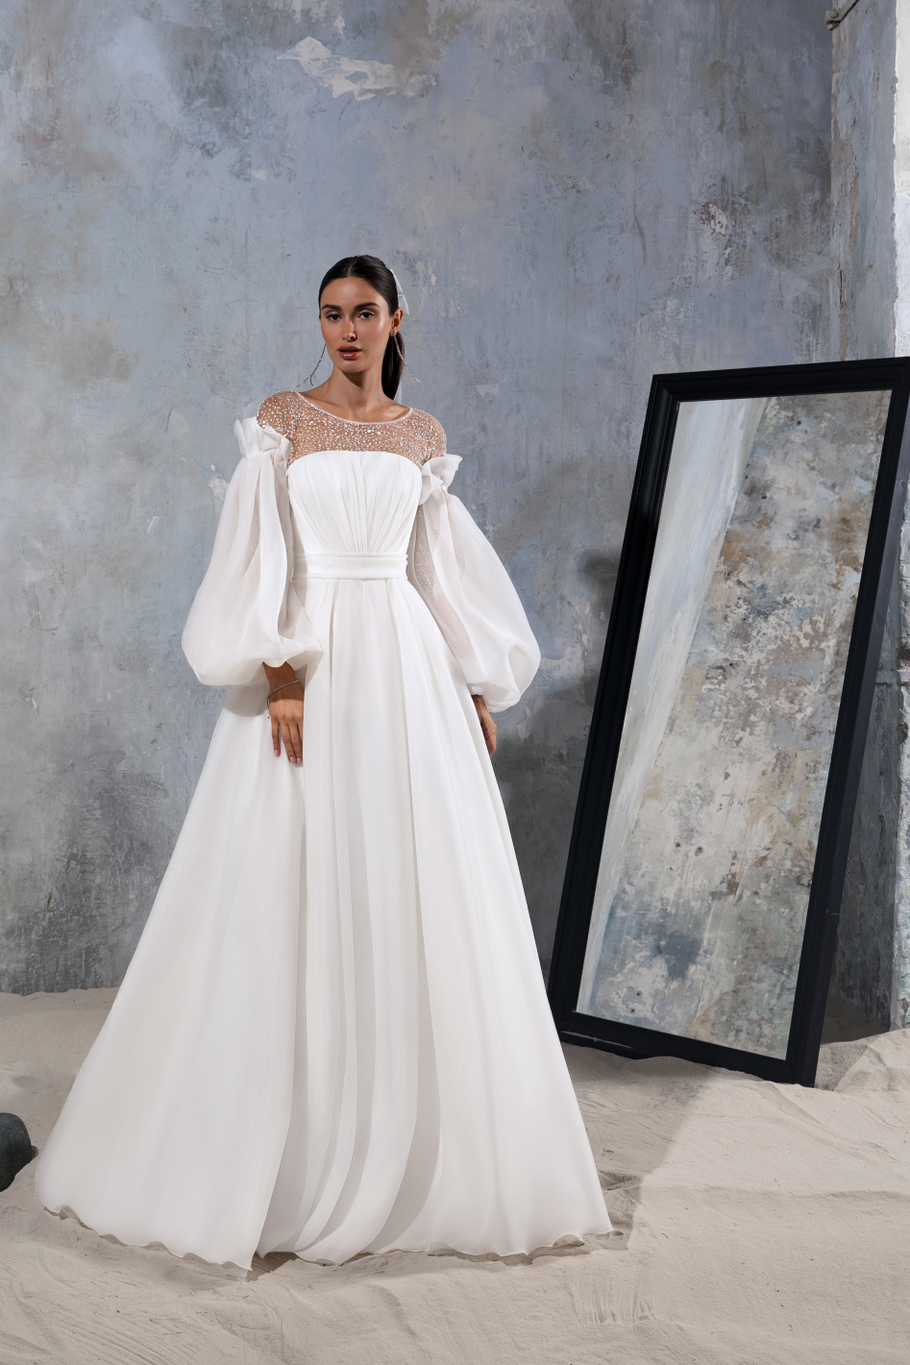 Купить свадебное платье «Залина» Секрет Споса из коллекции Блеск 2022 года в салоне «Мэри Трюфель»